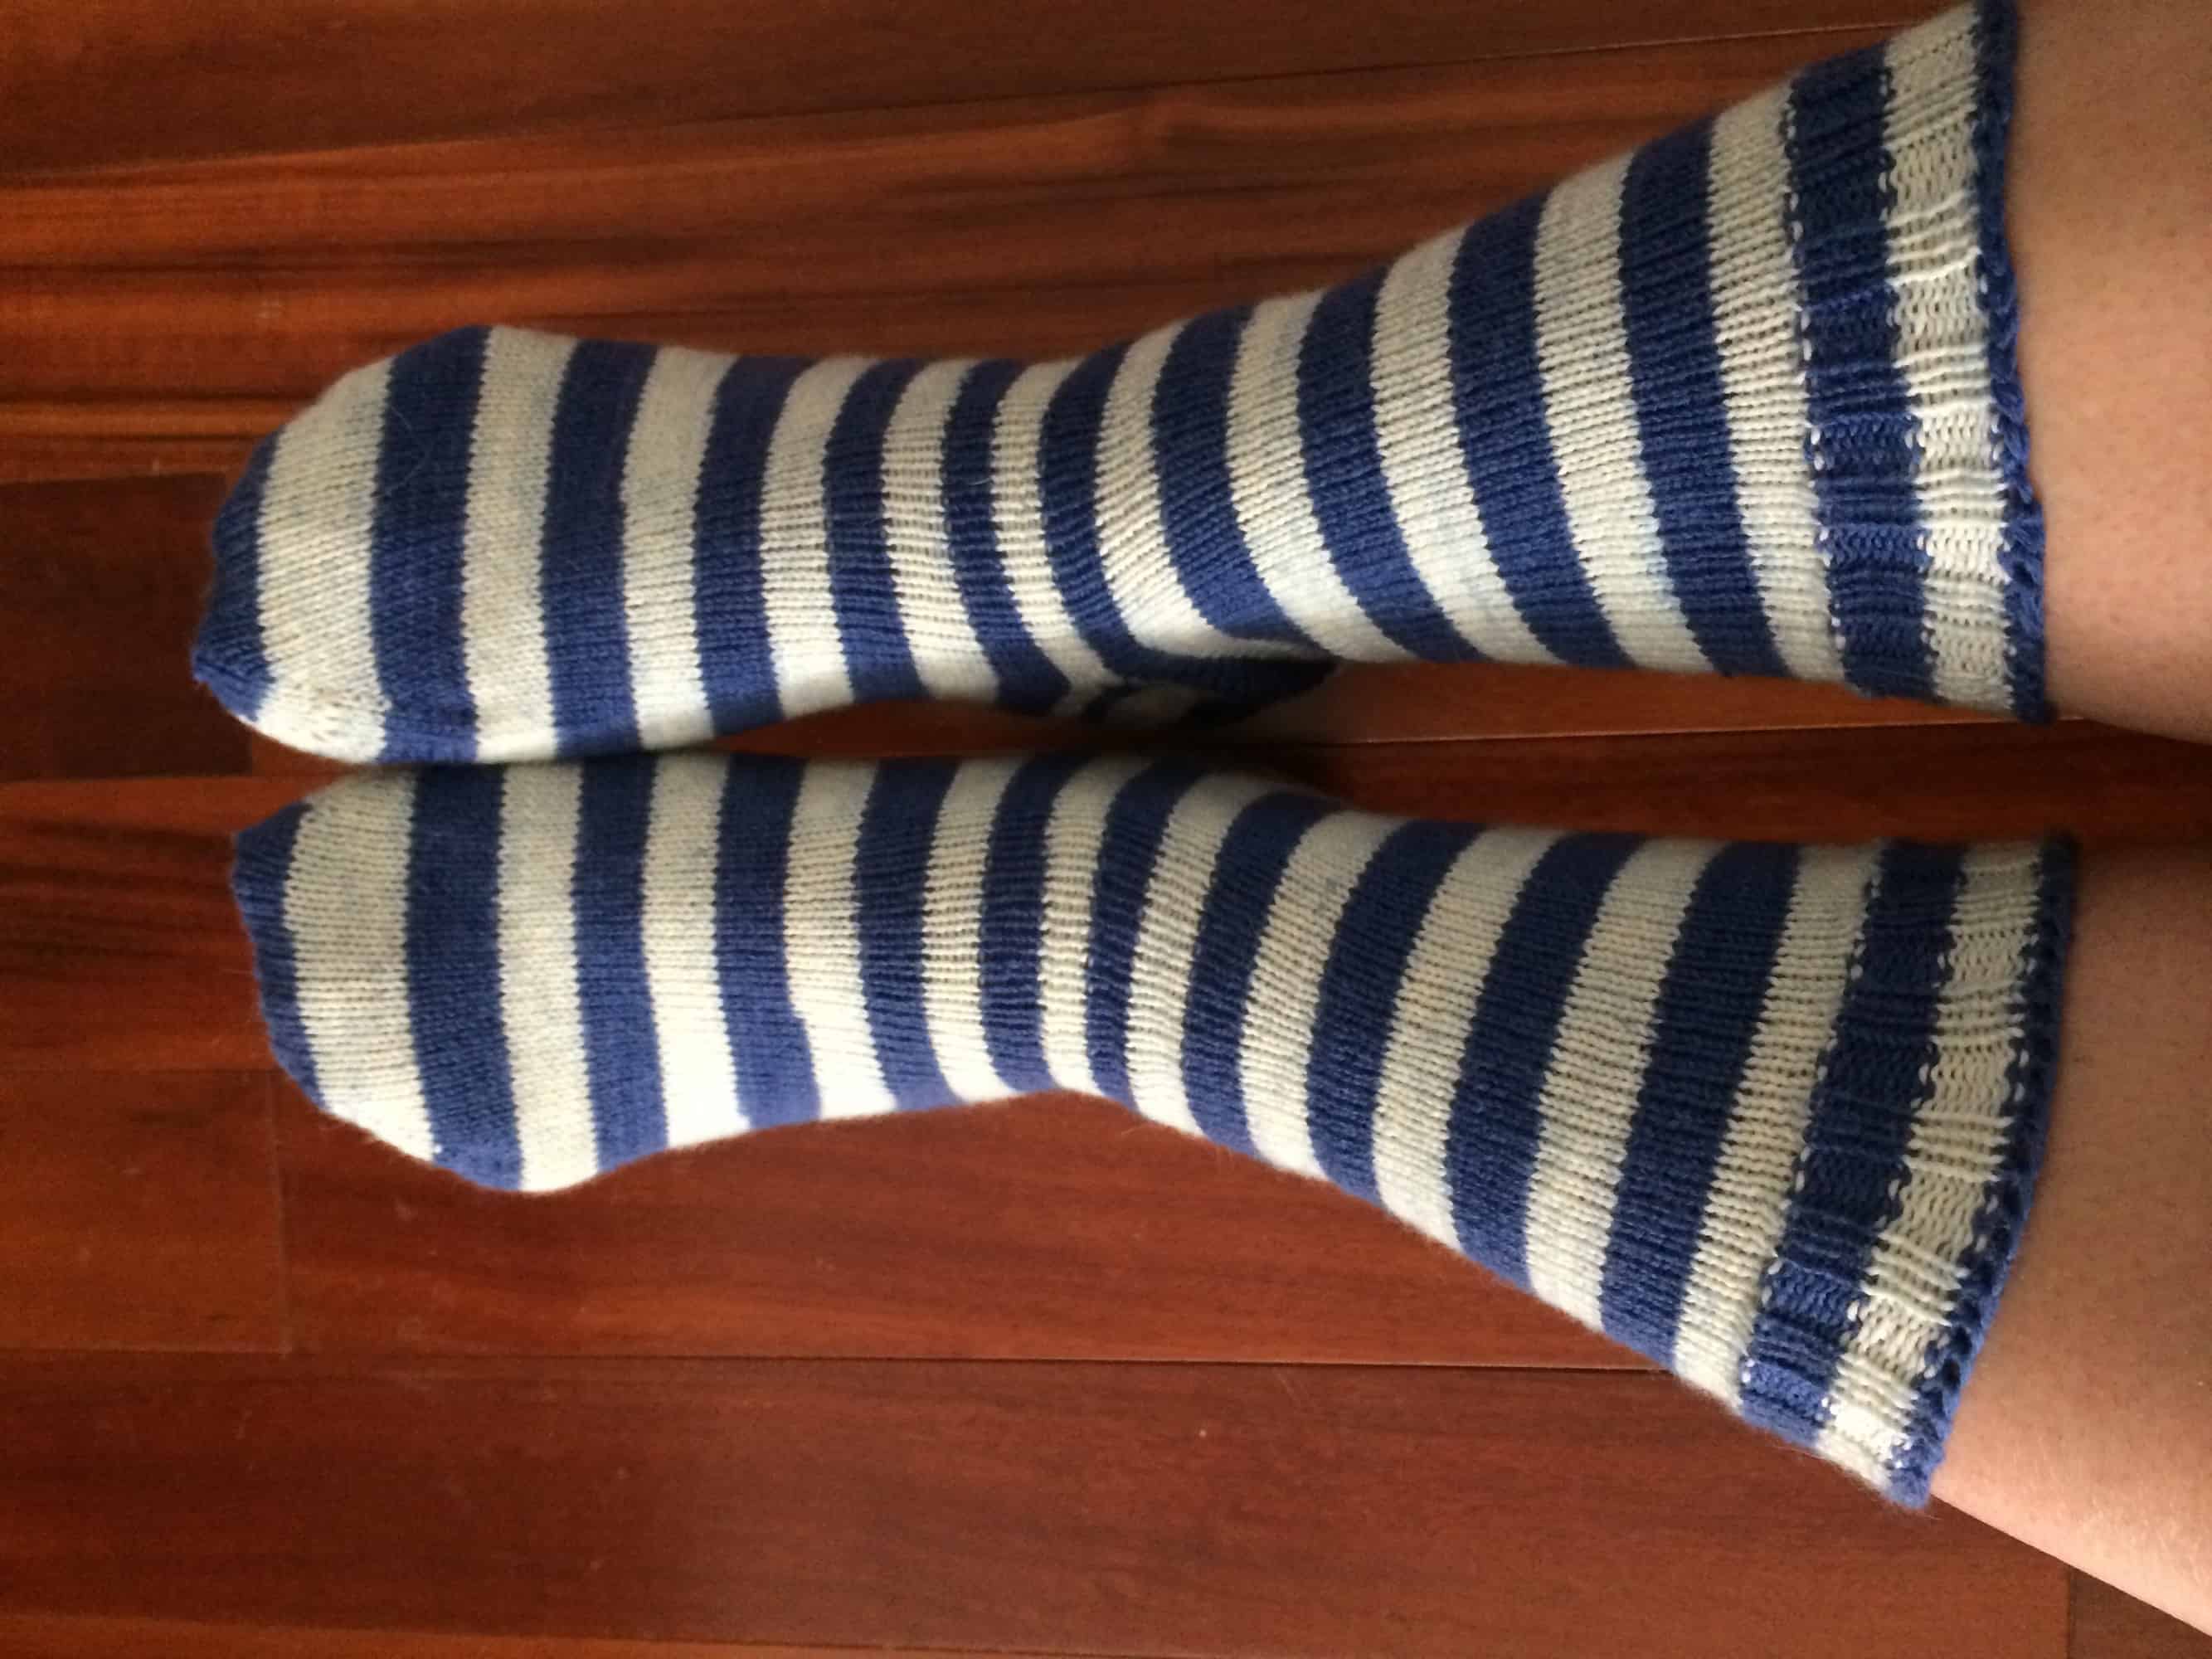 Ravenclaw Socks